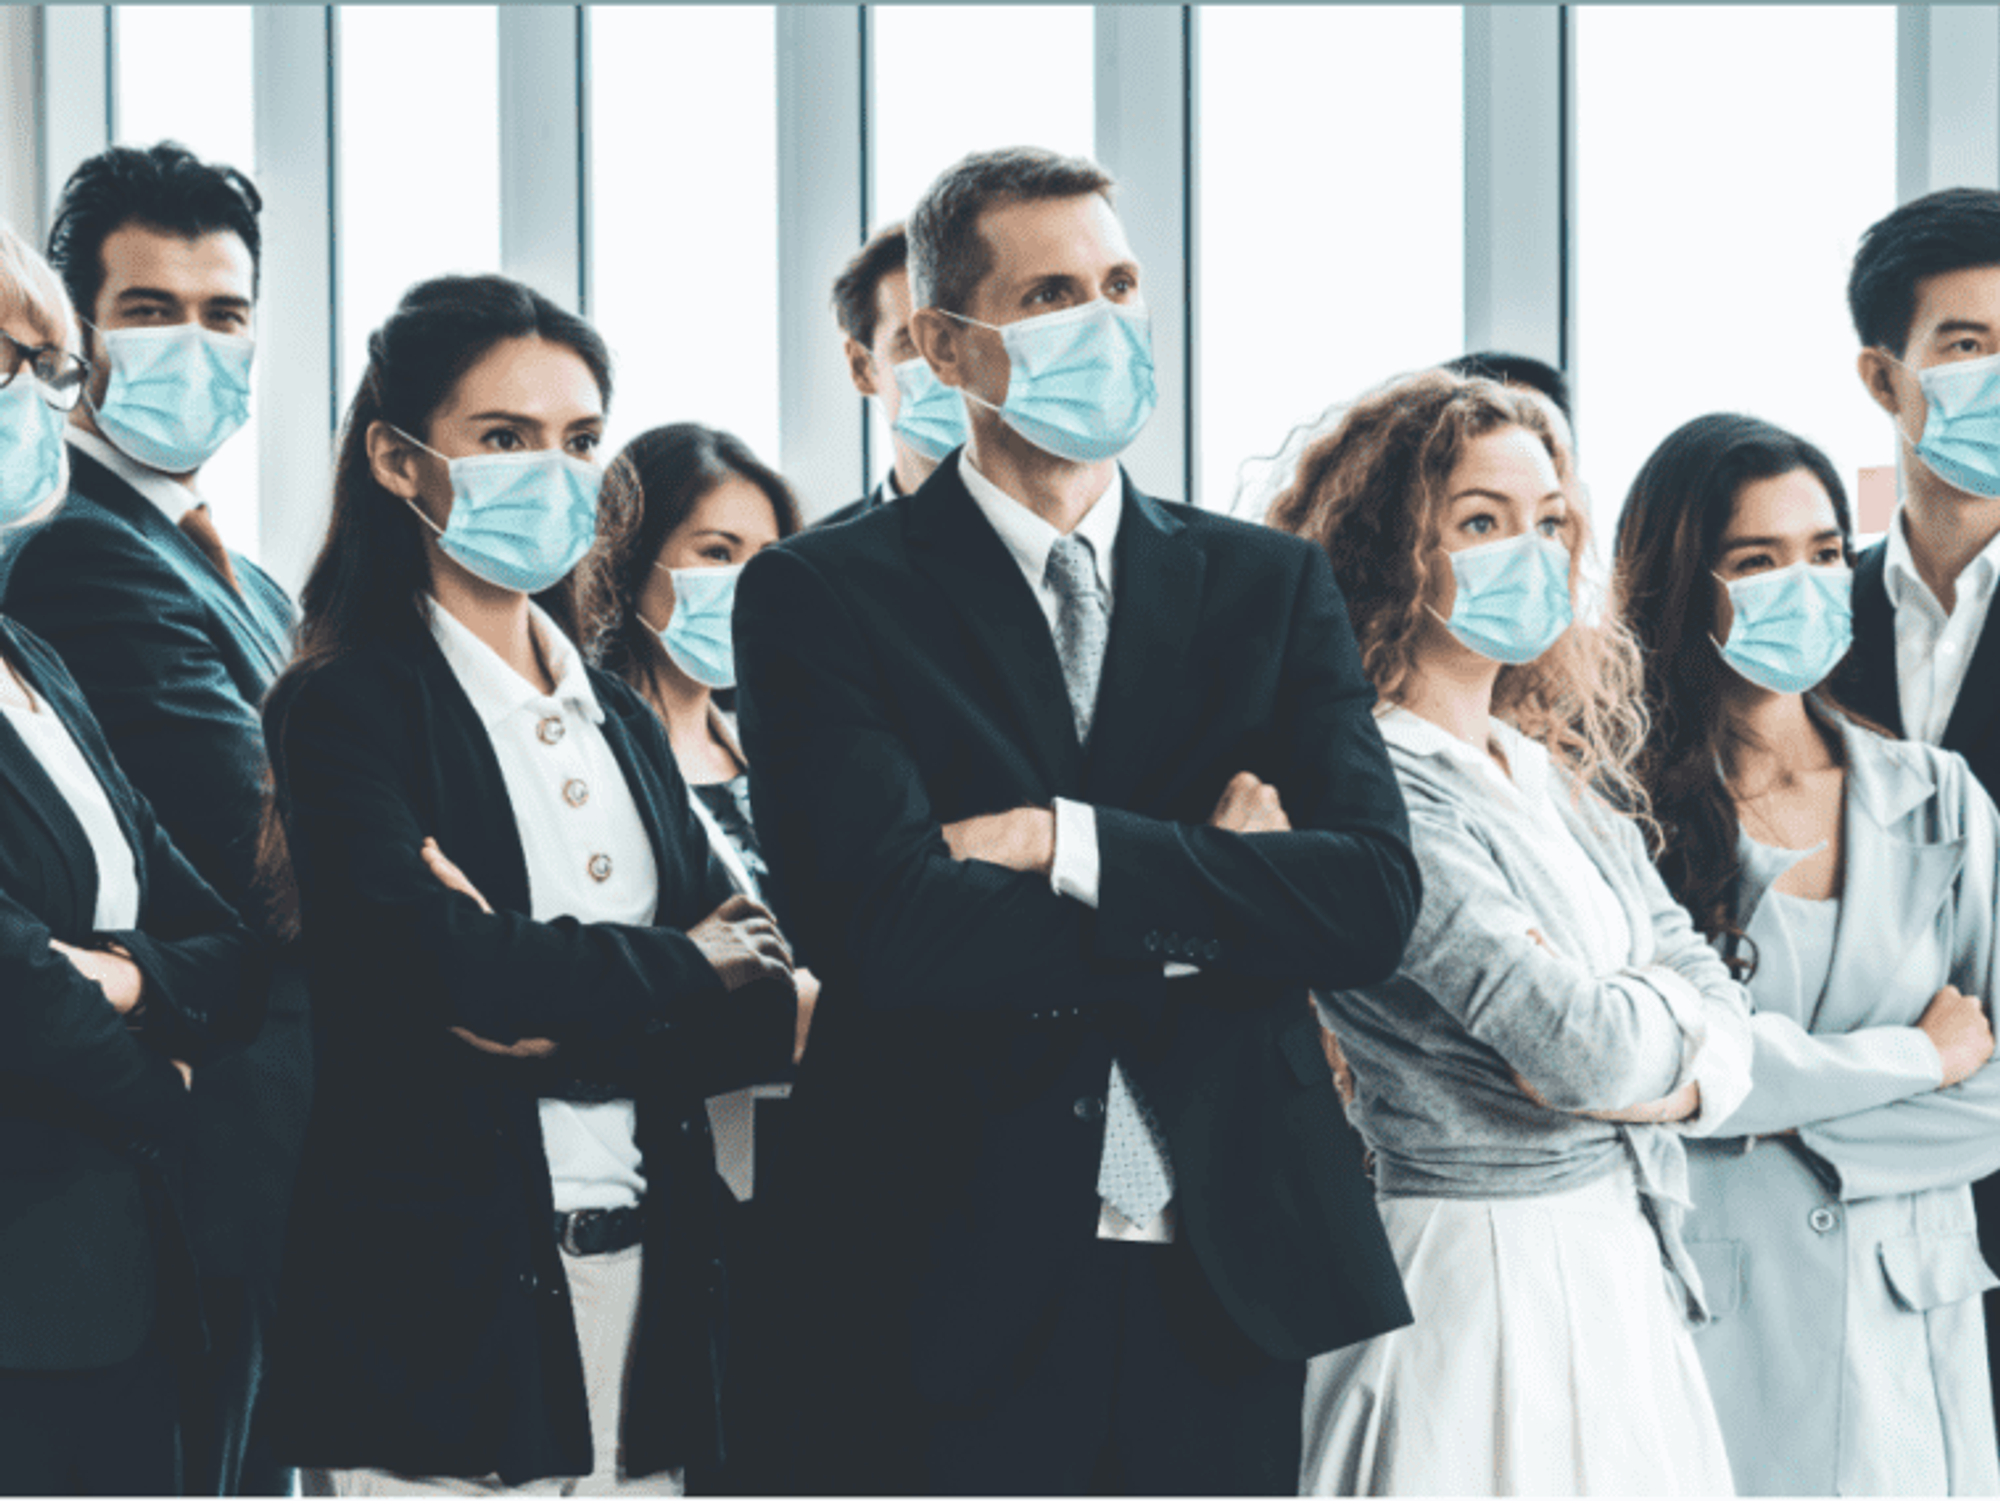 Doctors wearing face masks